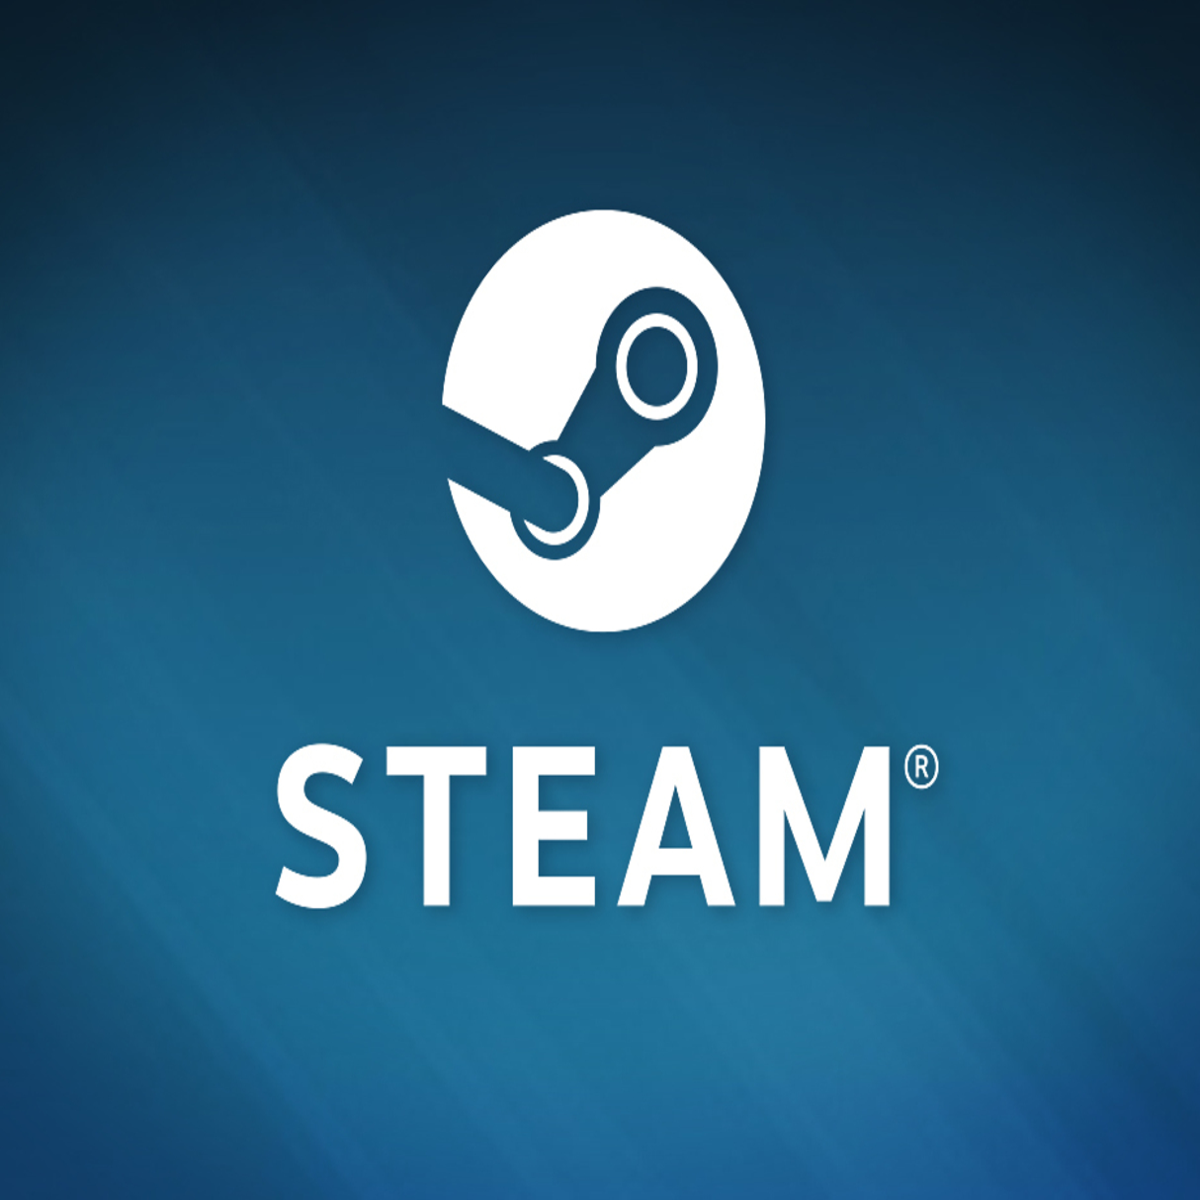 Steam aplica mais restrições para compras fora do país de origem